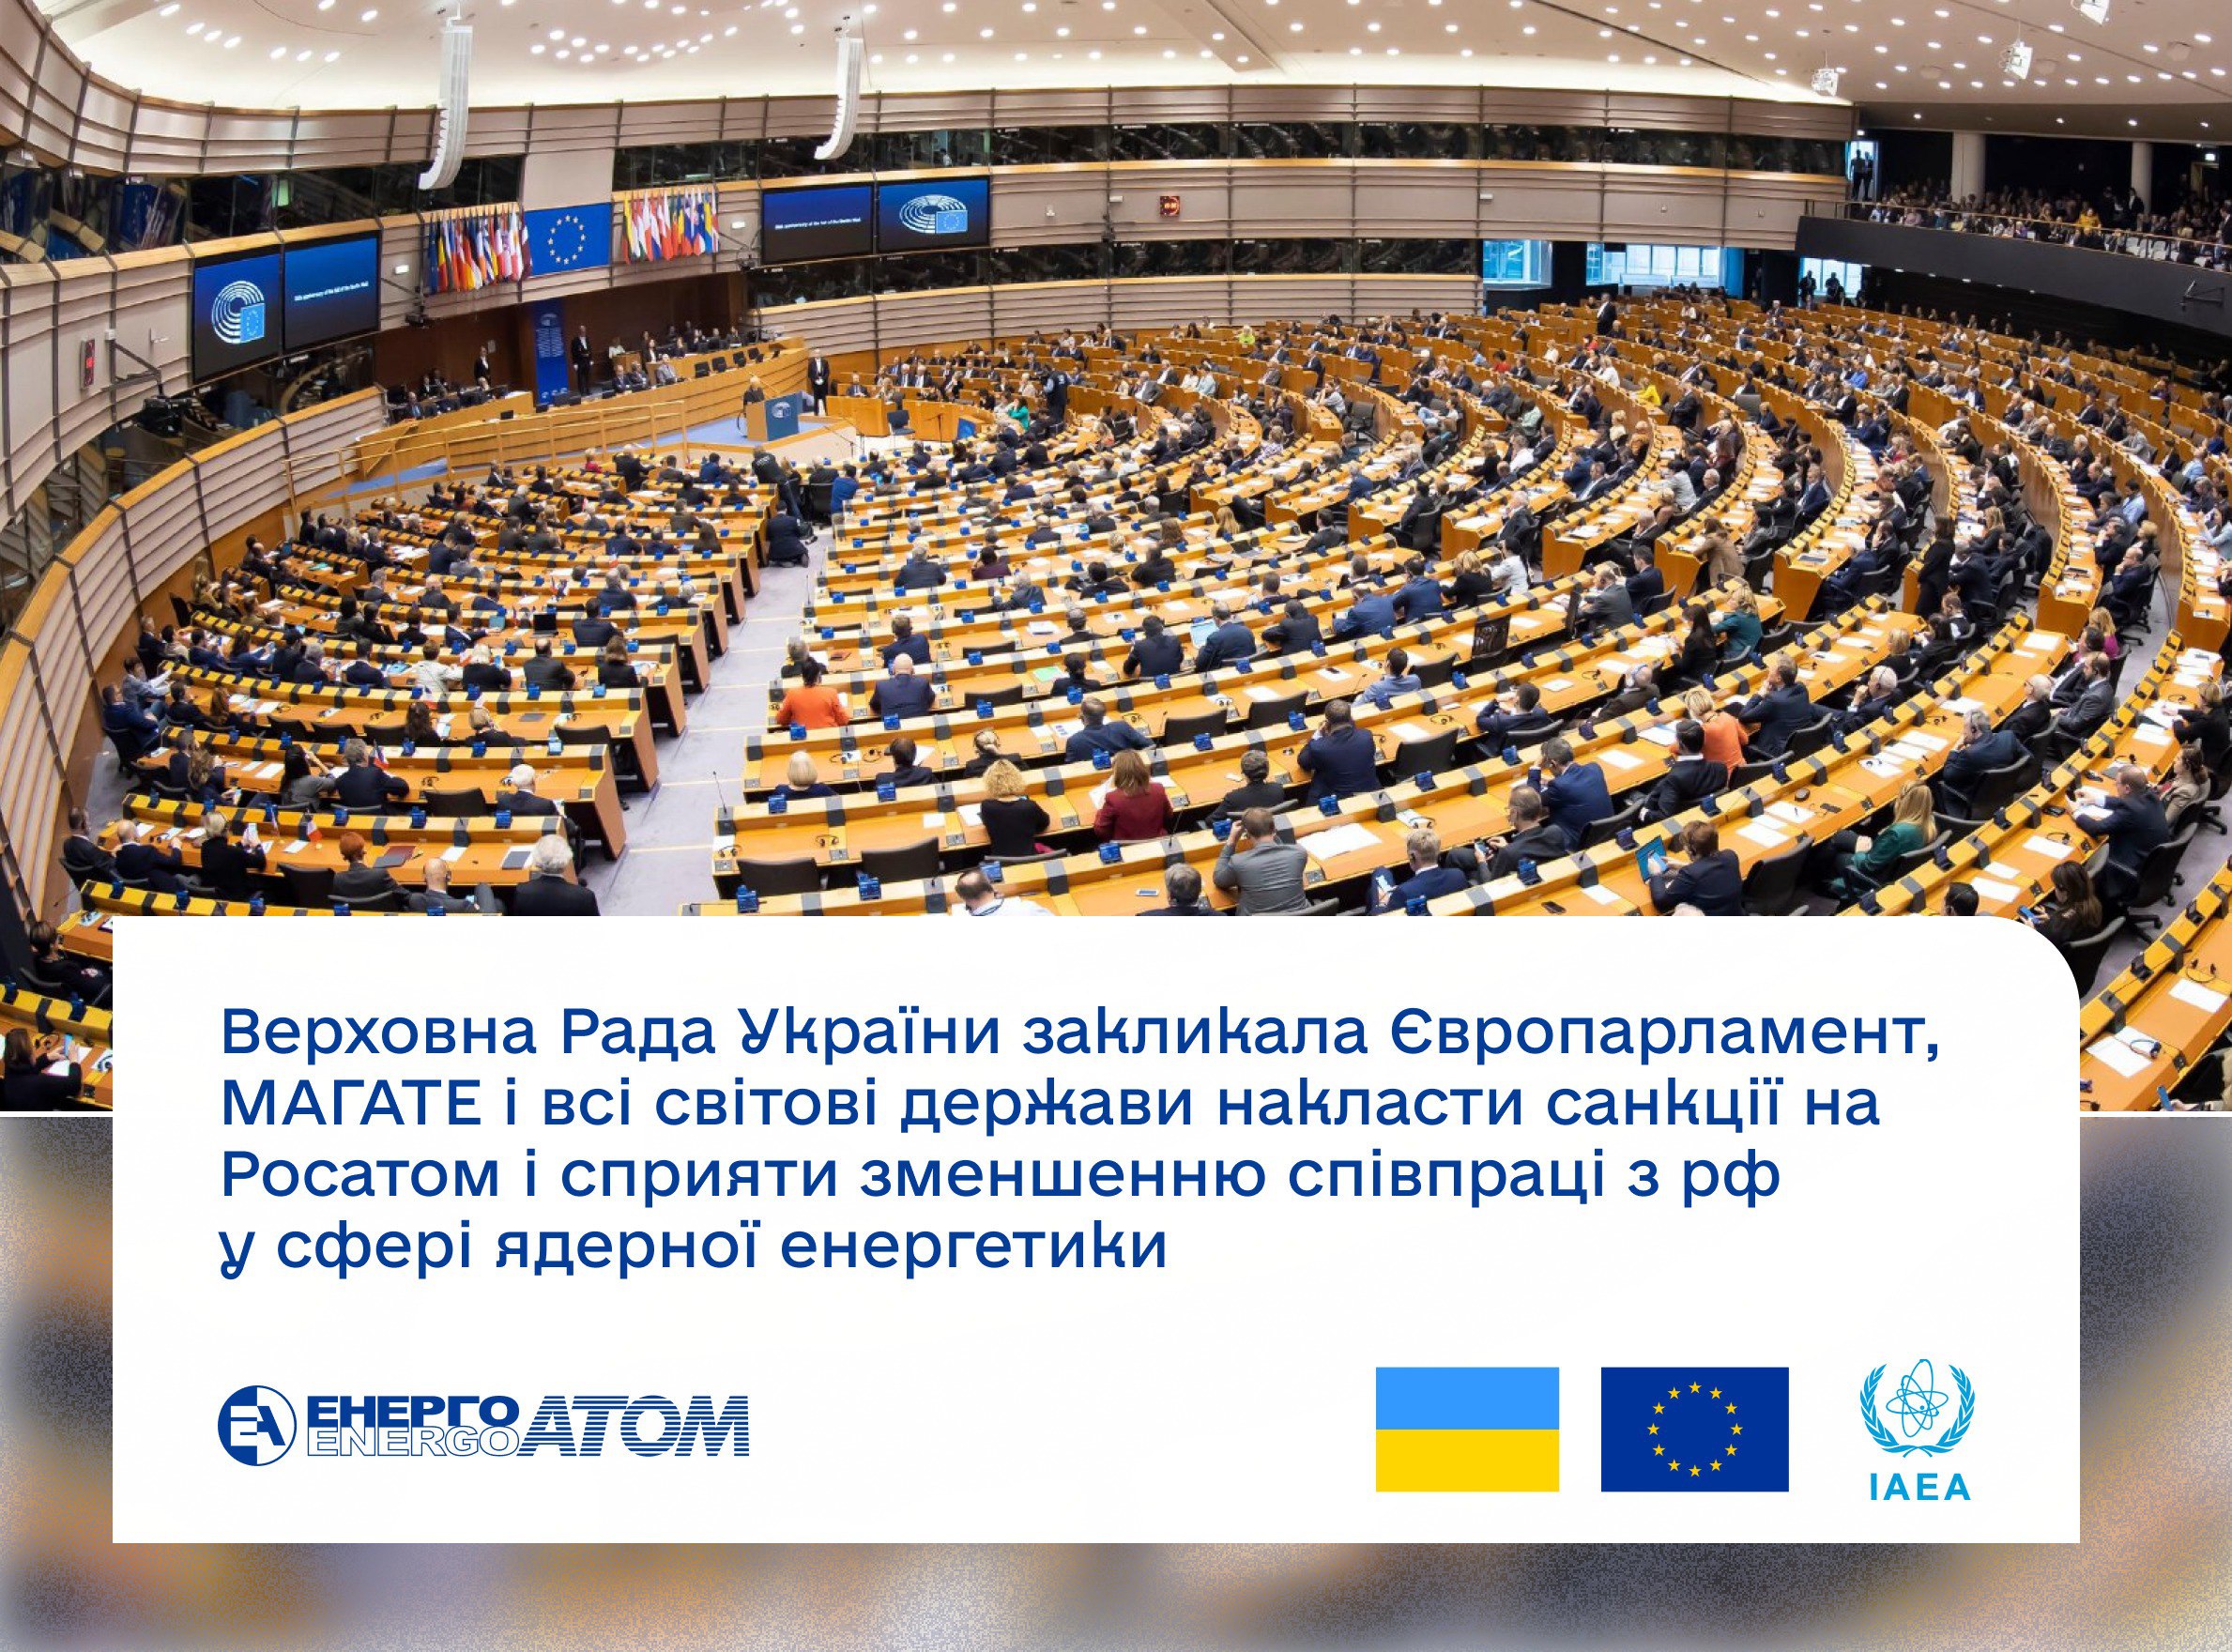 ⚠️ Український парламент звернувся до парламентів ЄС та усіх світових держав, а також до МАГАТЕ щодо накладення санкцій на Росатом та запровадження заходів для зменшення співпраці з рф у сфері ядерної